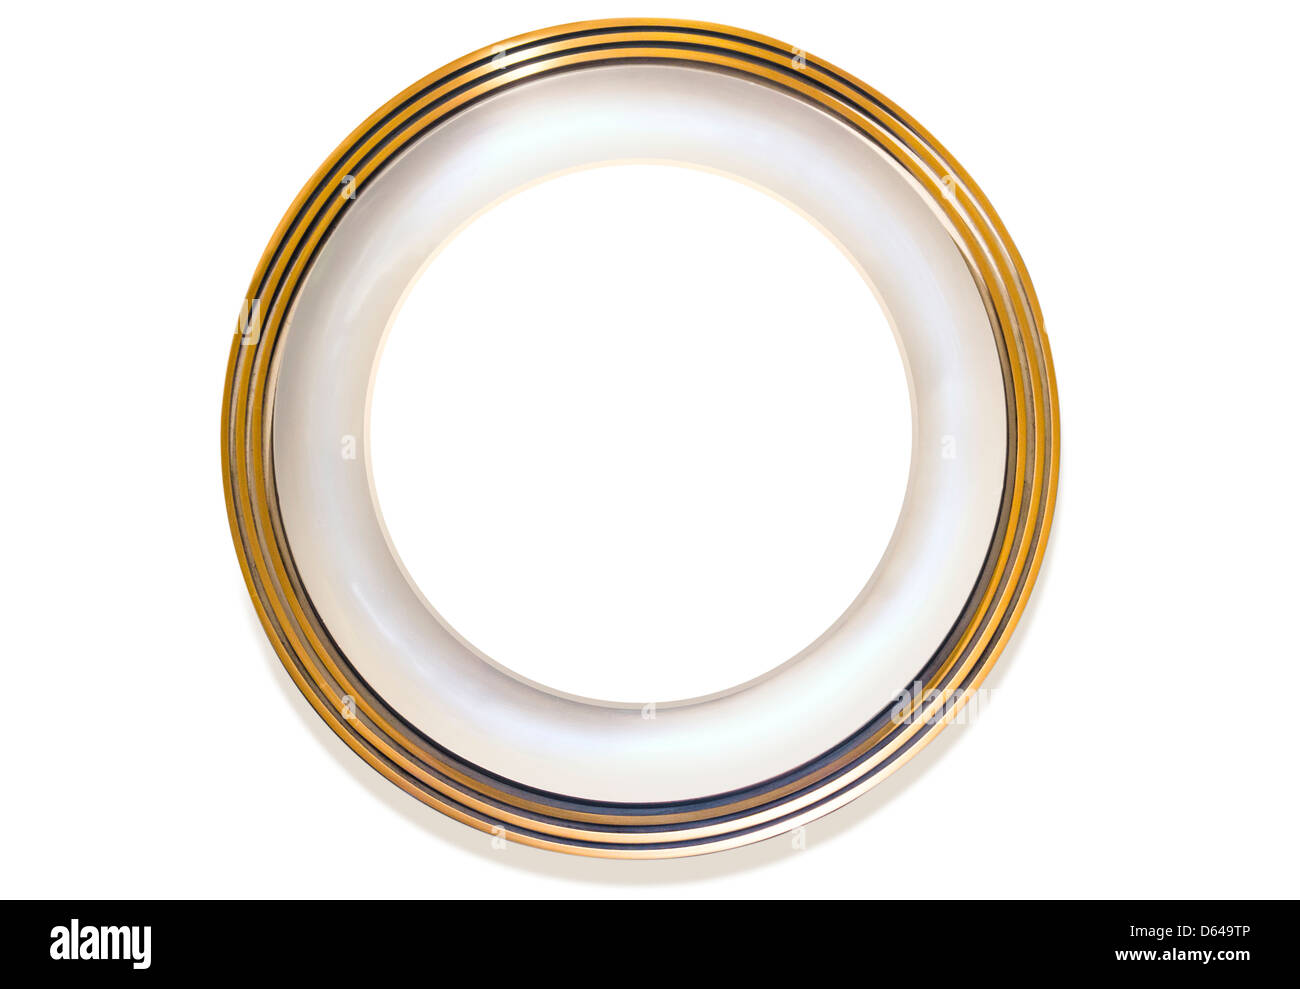 Plaque avec cercle intérieur blanc pour propre contenu sur fond blanc Banque D'Images